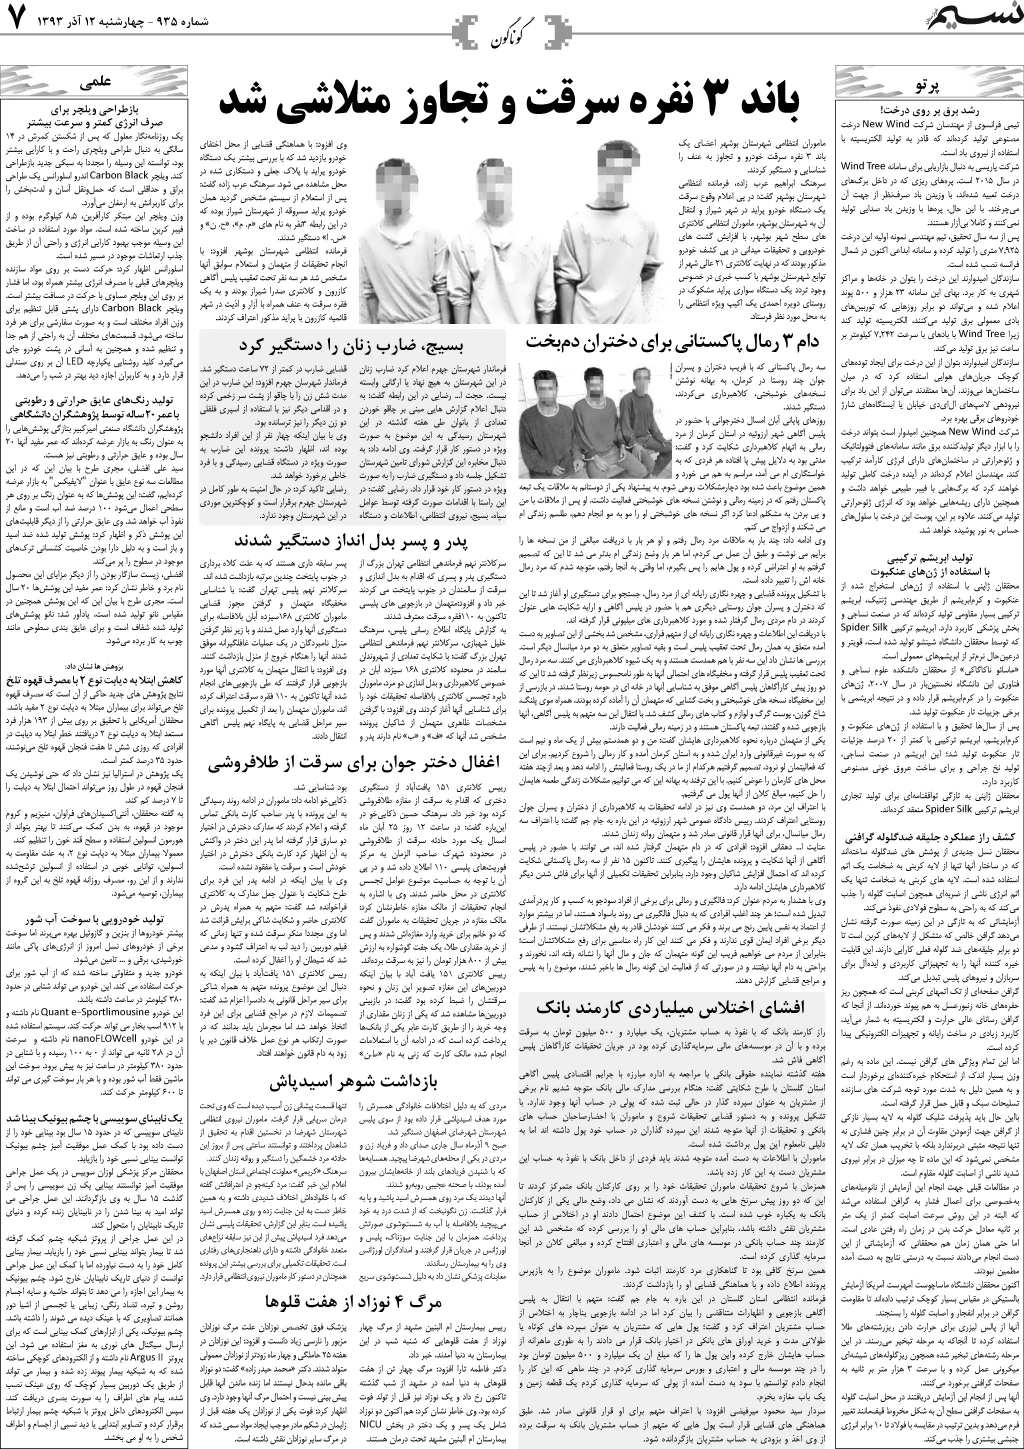 صفحه گوناگون روزنامه نسیم شماره 935